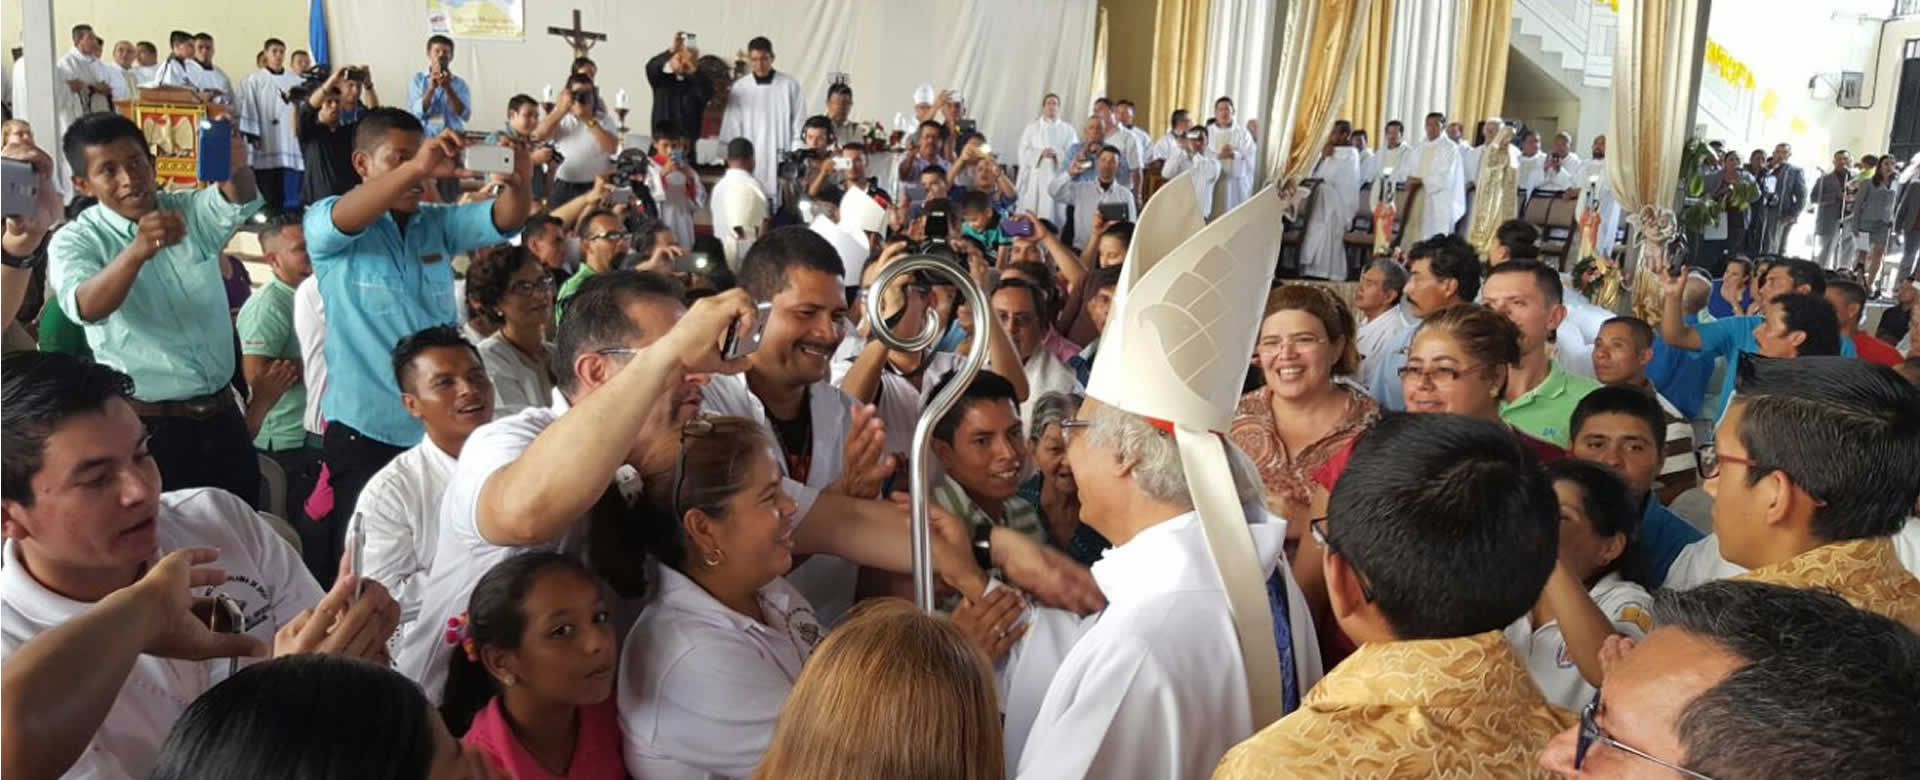 Cardenal Leopoldo Brenes clausura de la fiesta misionera 2017 en Matagalpa